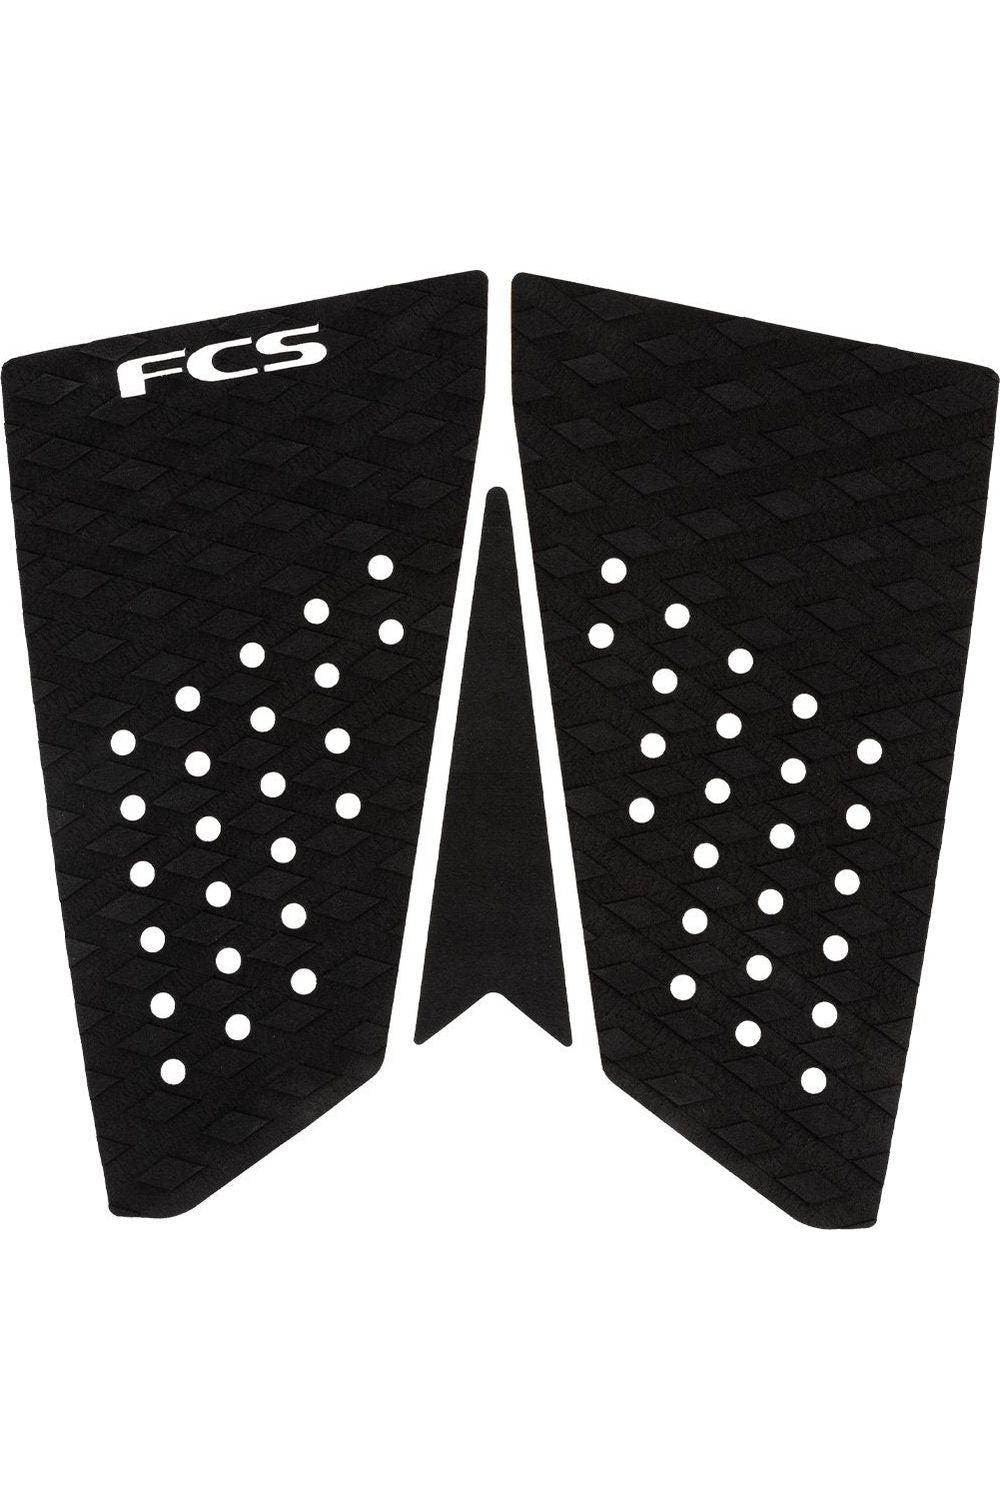 FCS T-3 Fish Black Tail Pad